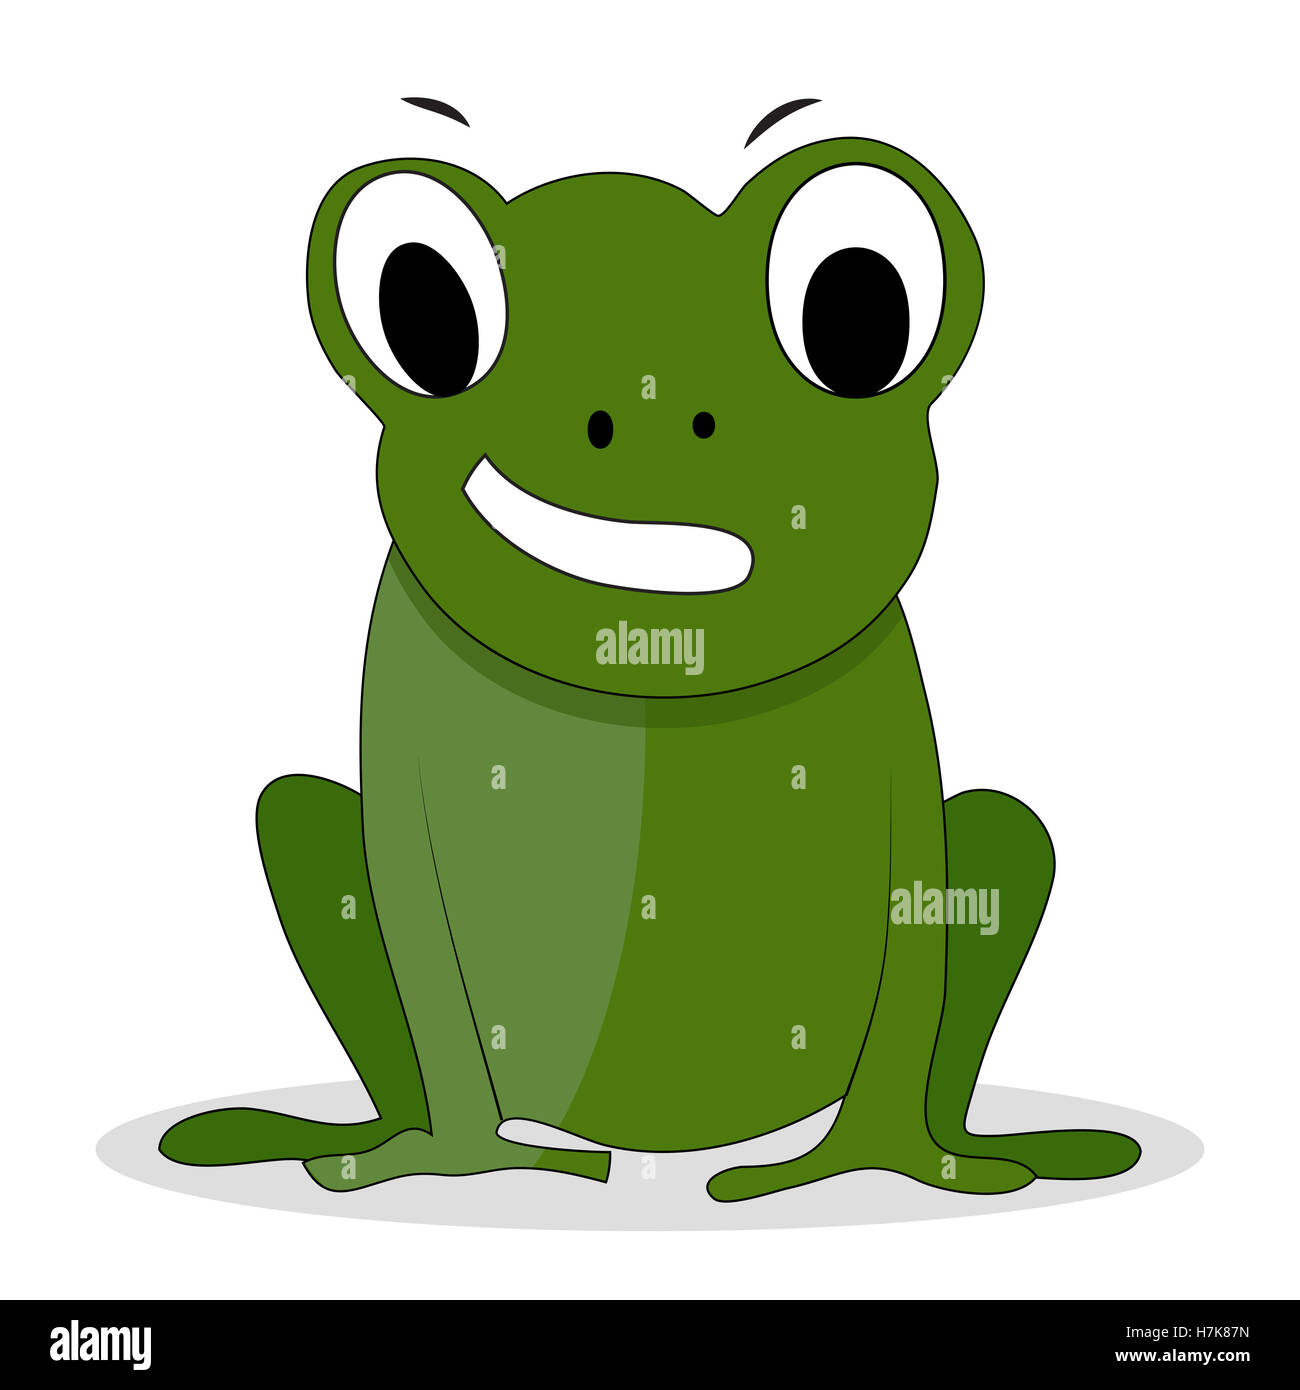 Grüner Frosch-Cartoon Charakter. Cartoon-Tier, Frosch-Prinz und Cartoon-Charakter. Vektor-illustration Stockfoto